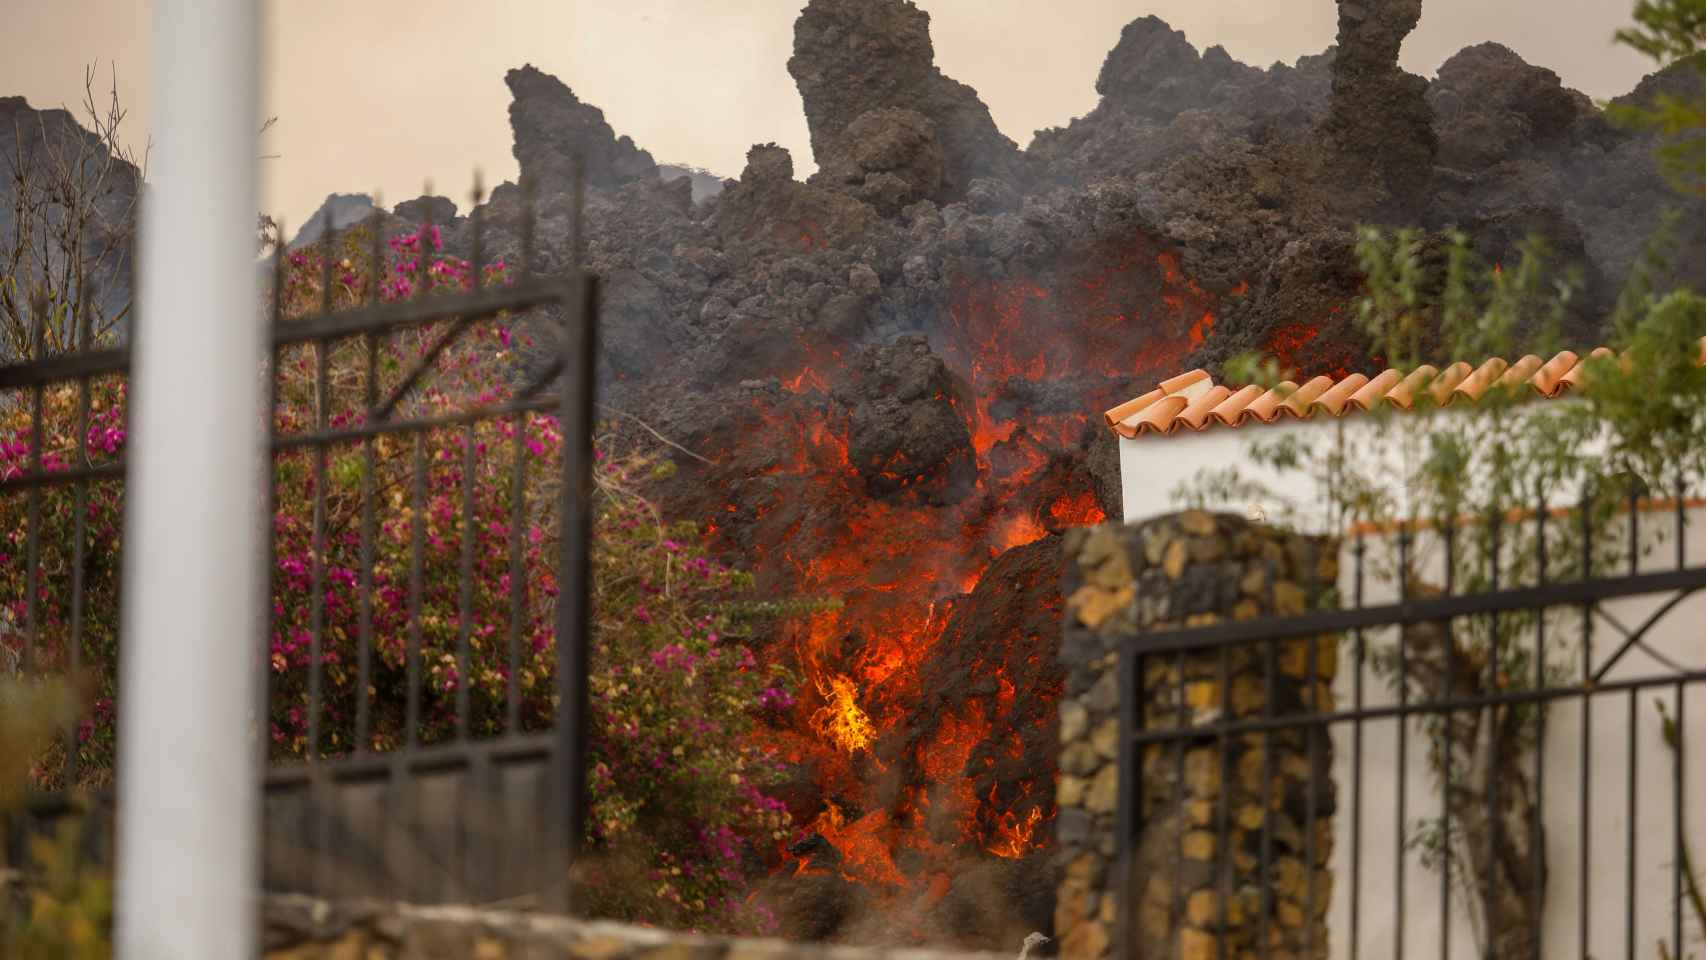 La lava del volcán llegando a las casas de la zona de Los Llanos.